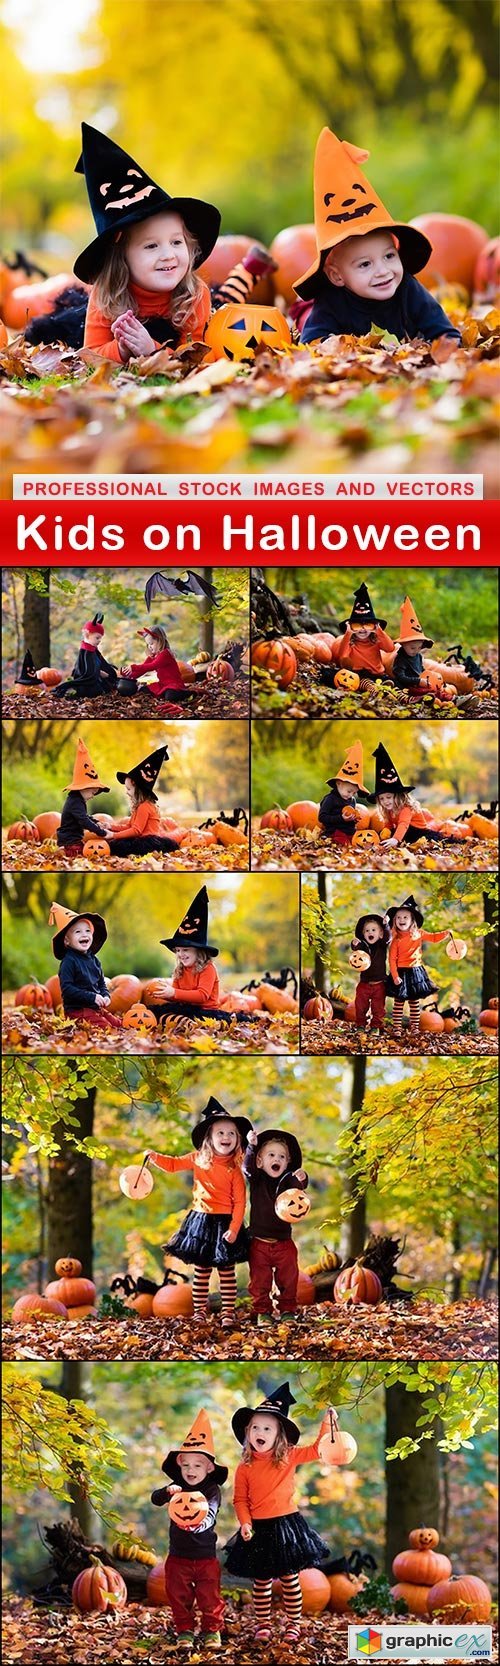 Kids on Halloween - 9 UHQ JPEG